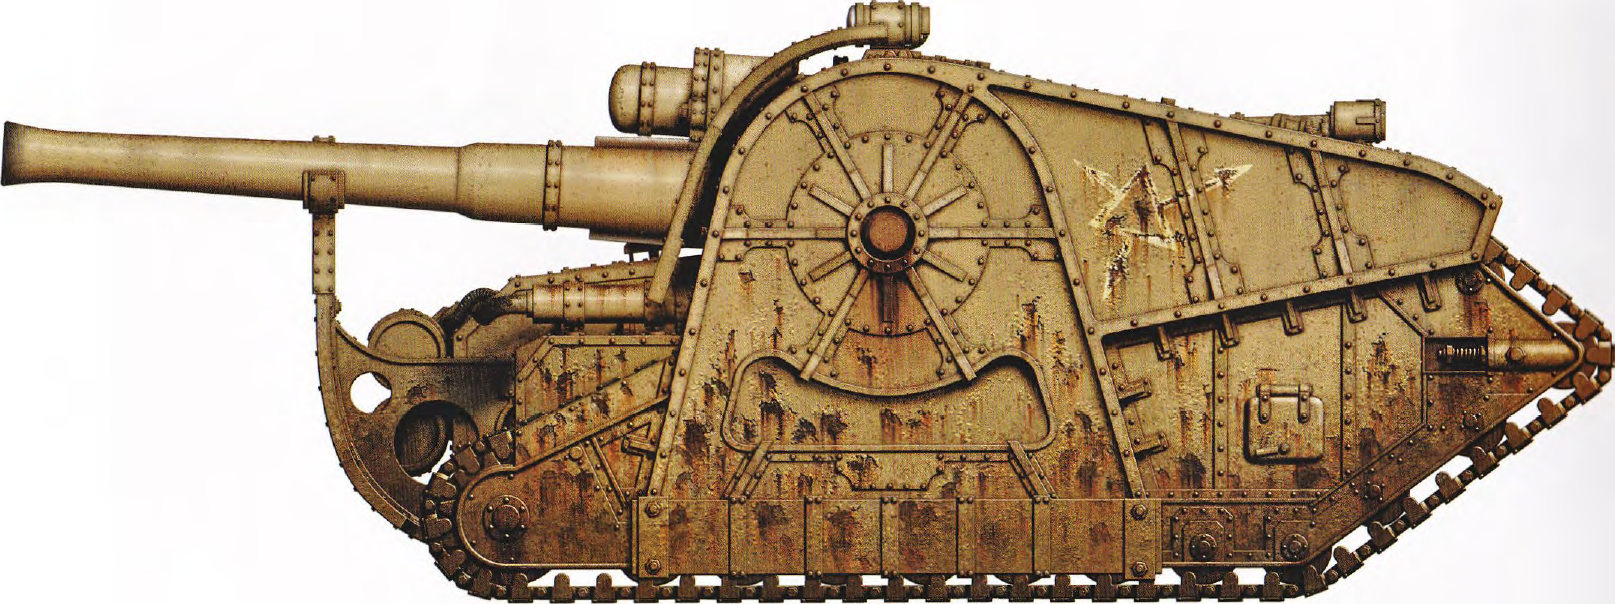 Minotaur super-heavy artillery